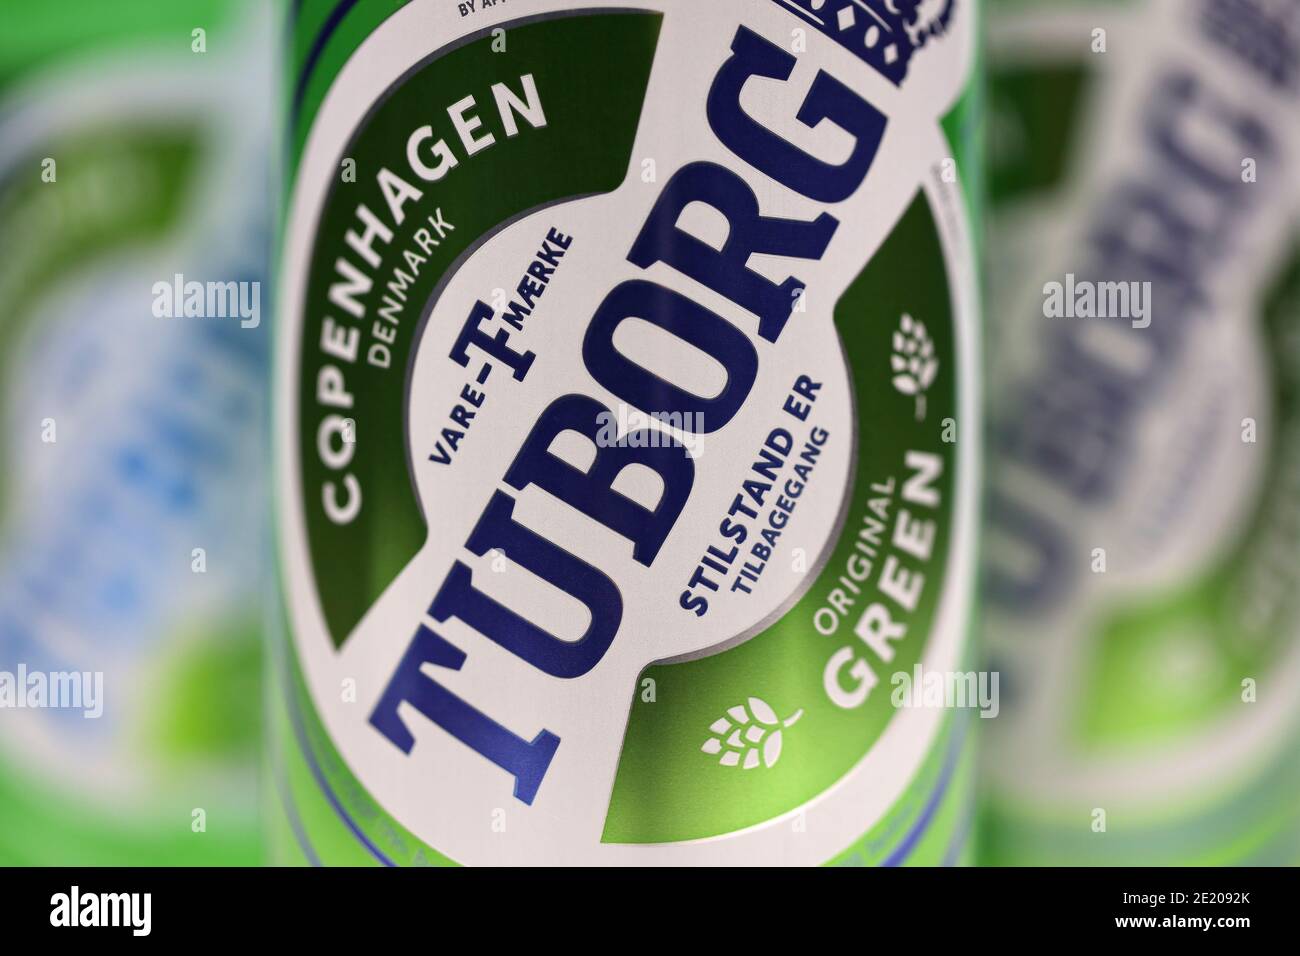 CHARKOW, UKRAINE - 8. DEZEMBER 2020: Aluminiumdosen von grünem Tuborg-Bier auf Holzhintergrund. Tuborg ist ein dänisches Brauunternehmen, das 1873 gegründet wurde Stockfoto